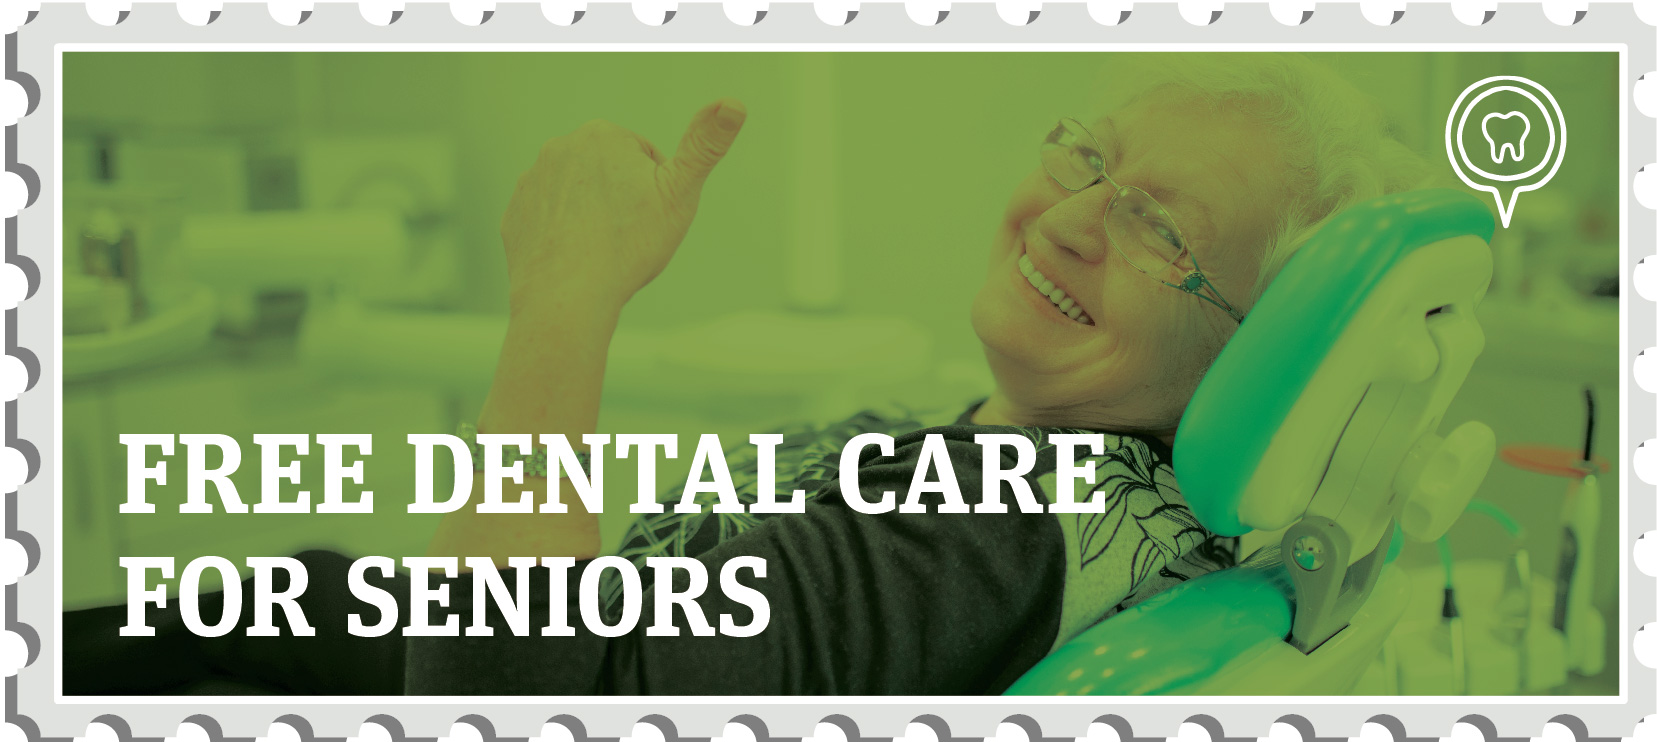 Free dental care for seniors